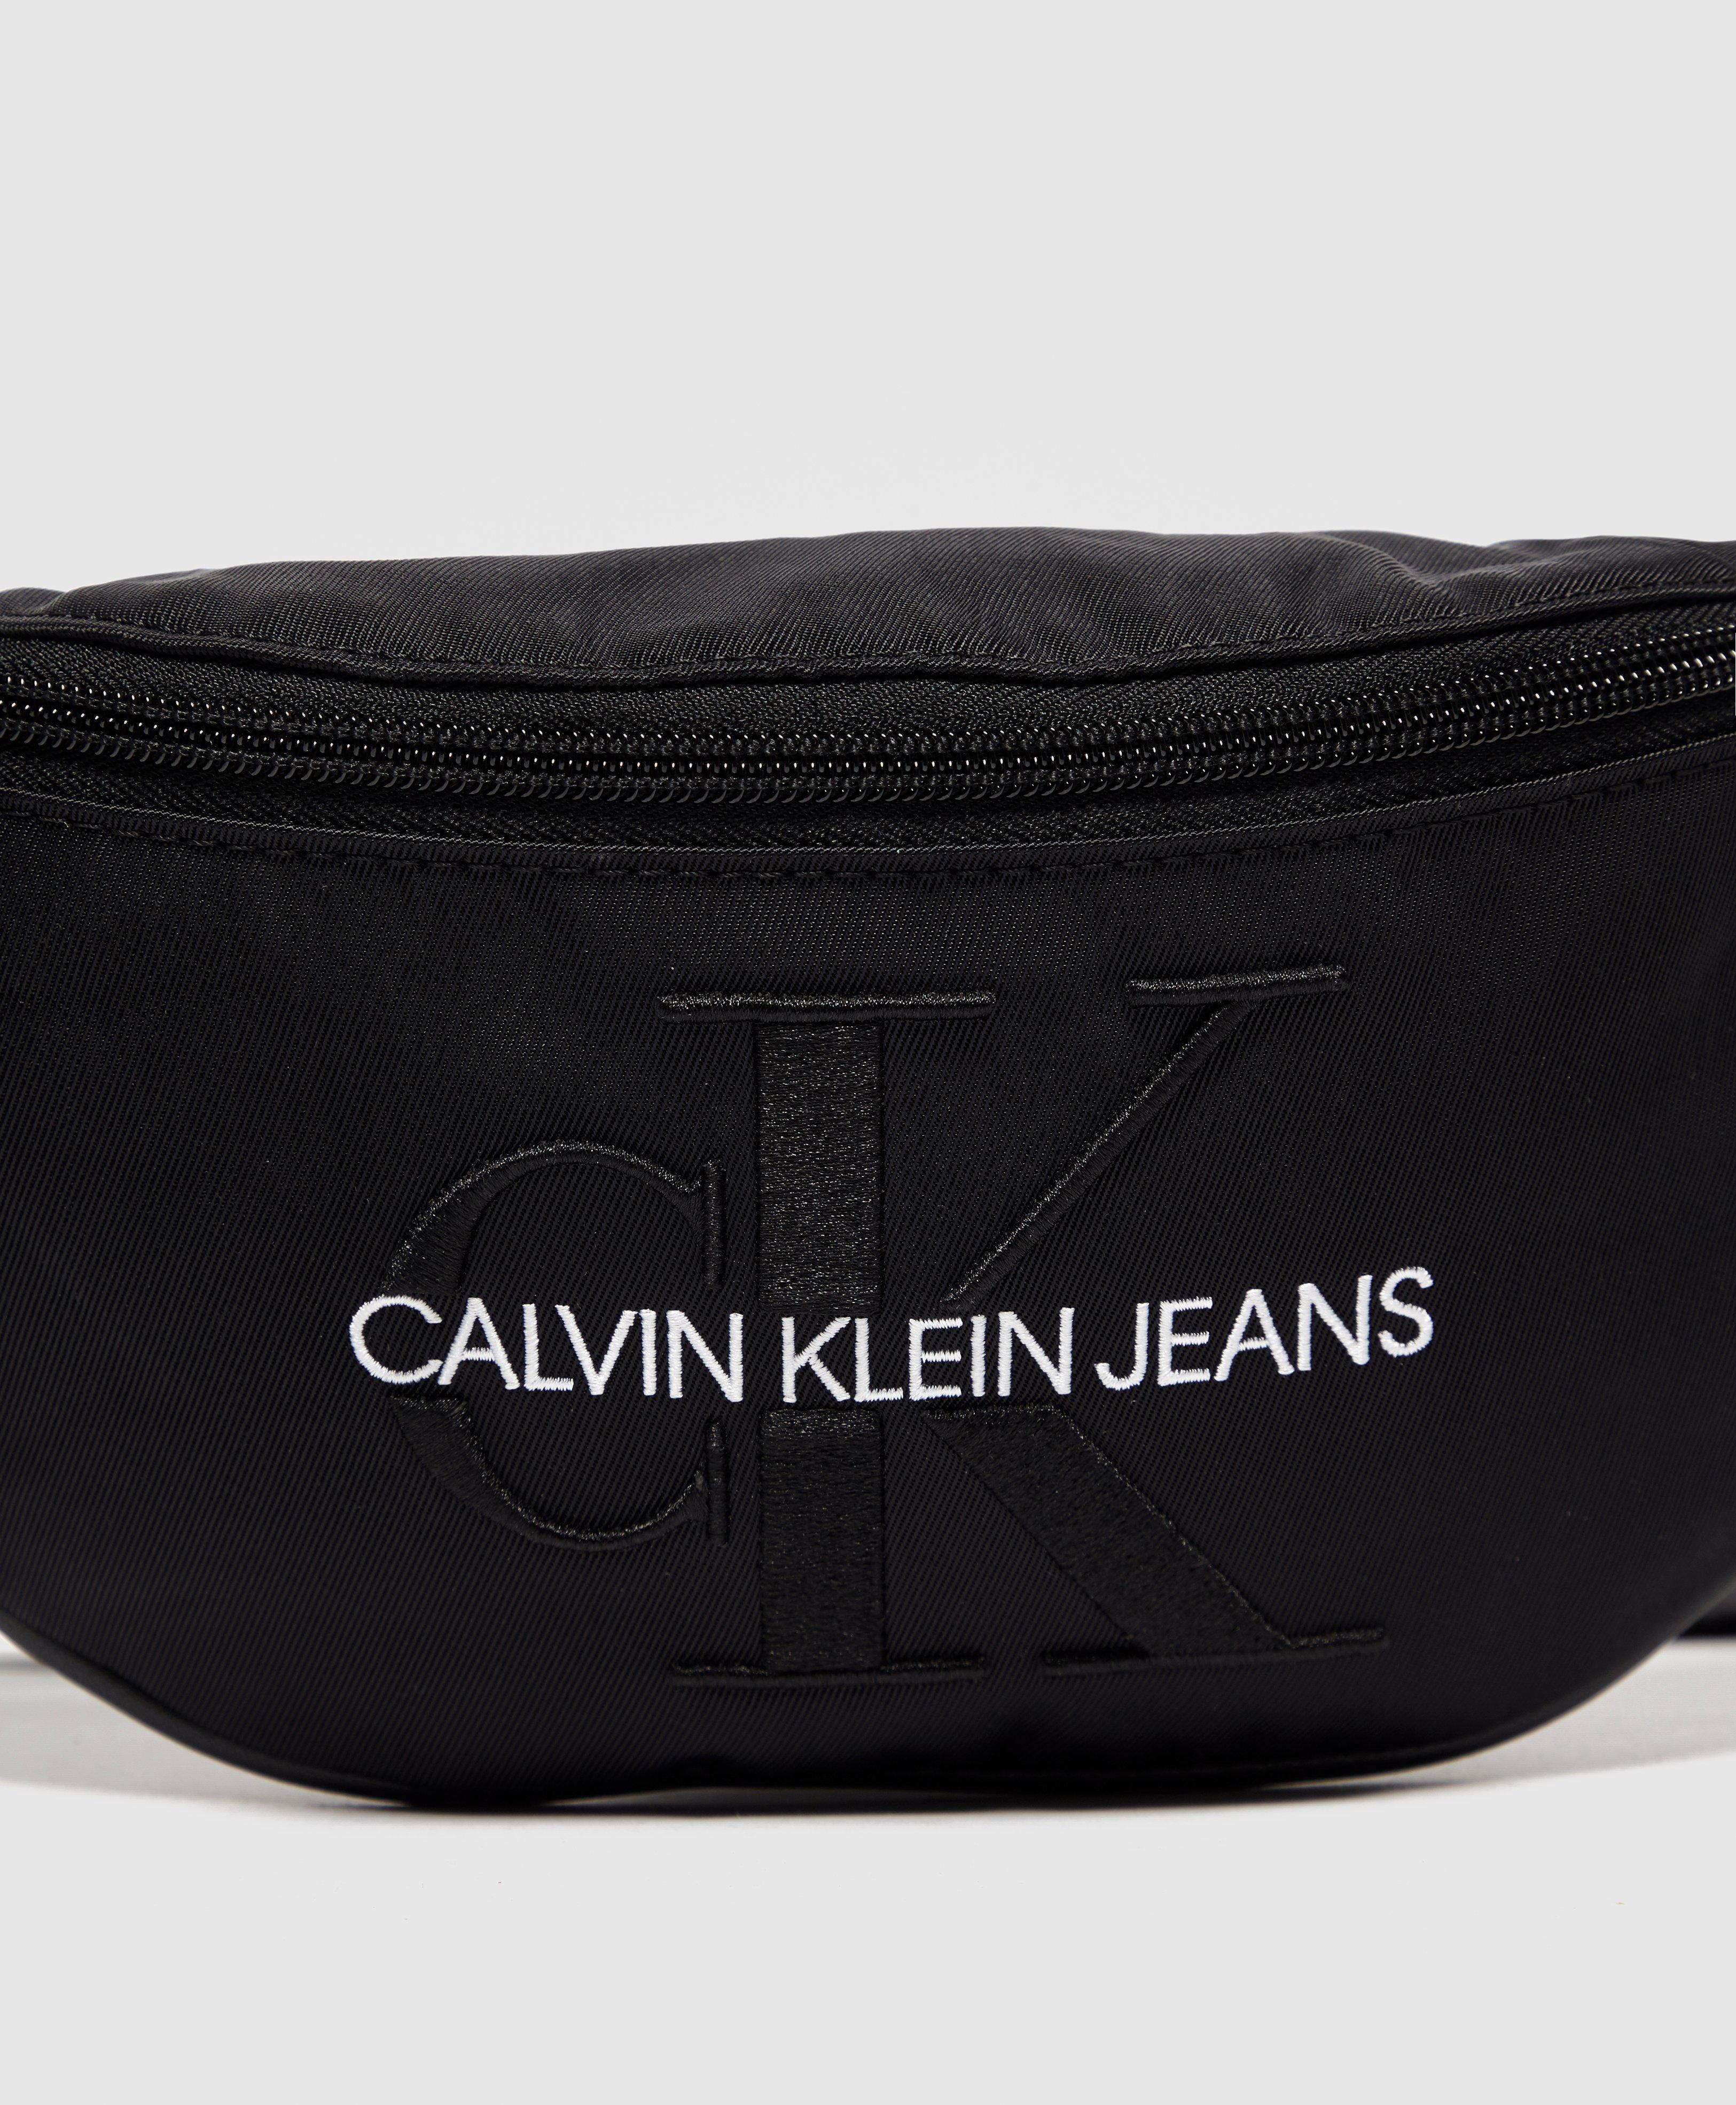 Calvin Klein Jeans Monogram Nylon Bum Bag in Black for Men - Lyst